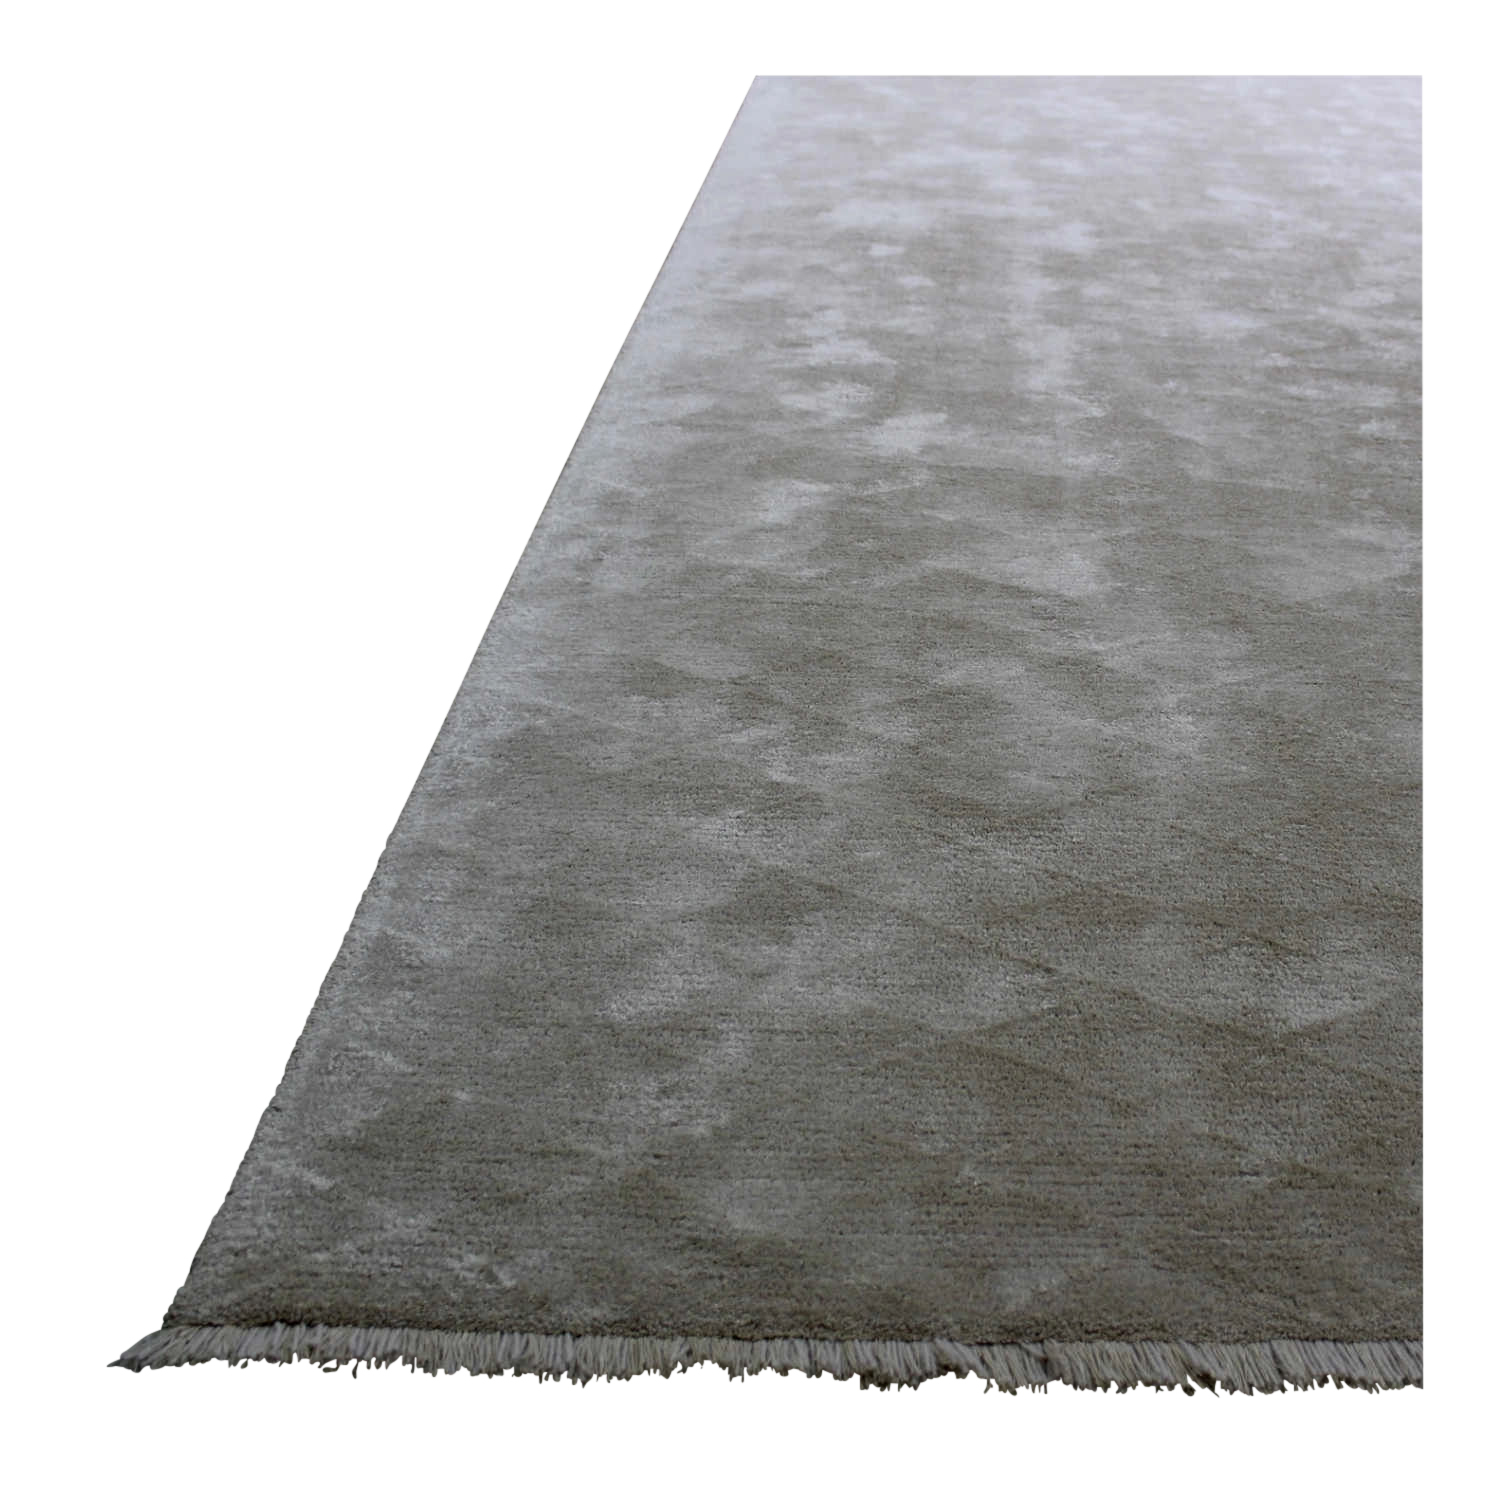 Diamond Teppich, Grösse b. 180 x l. 240 cm, Leinenfarben 1172 grau von Kramis